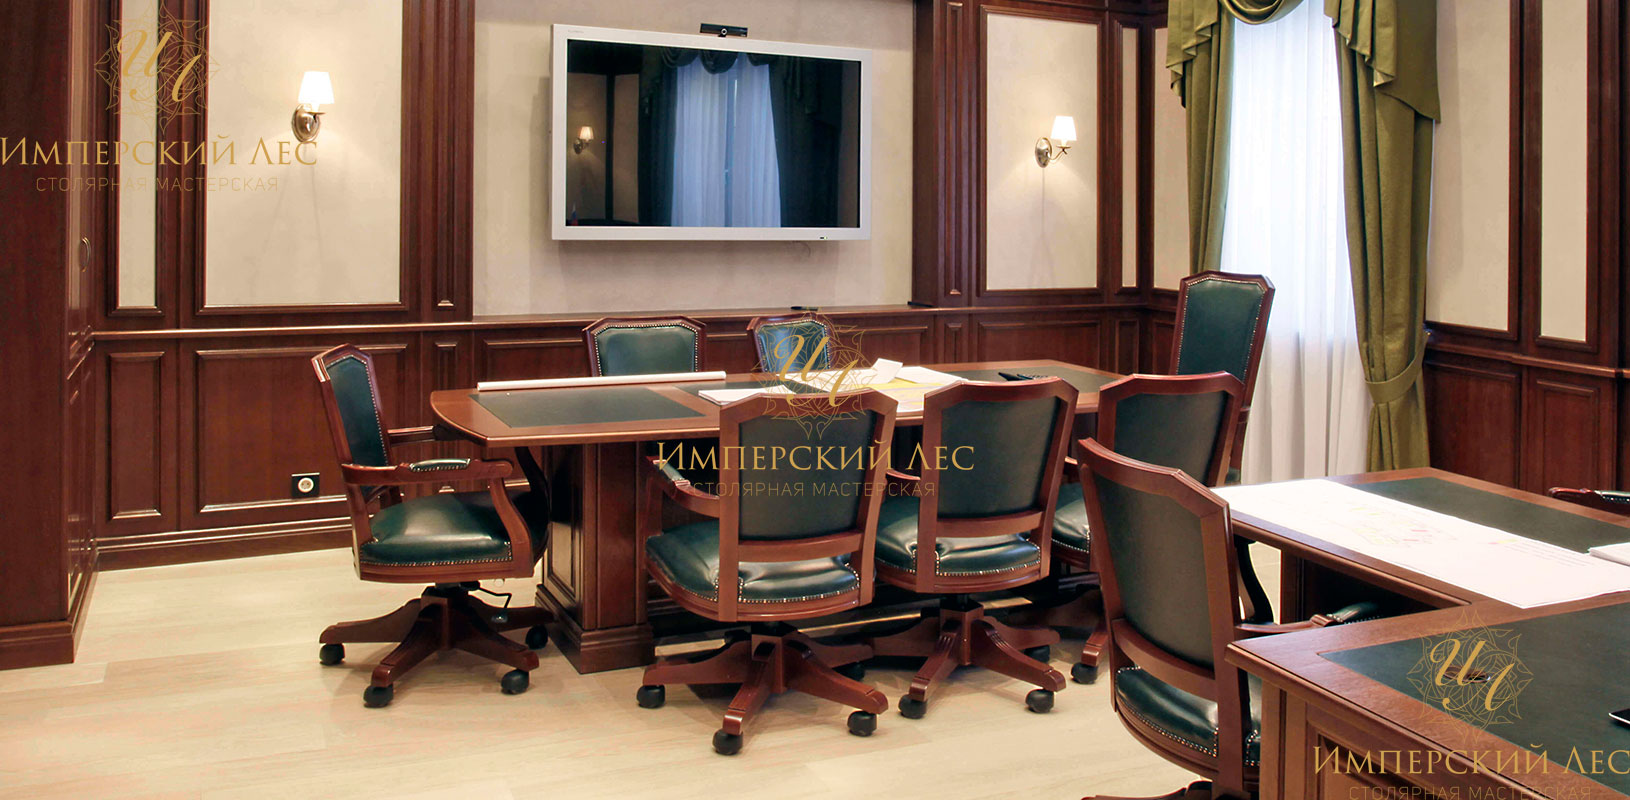 Офисный стол для переговоров "Топик" для бизнес-встреч